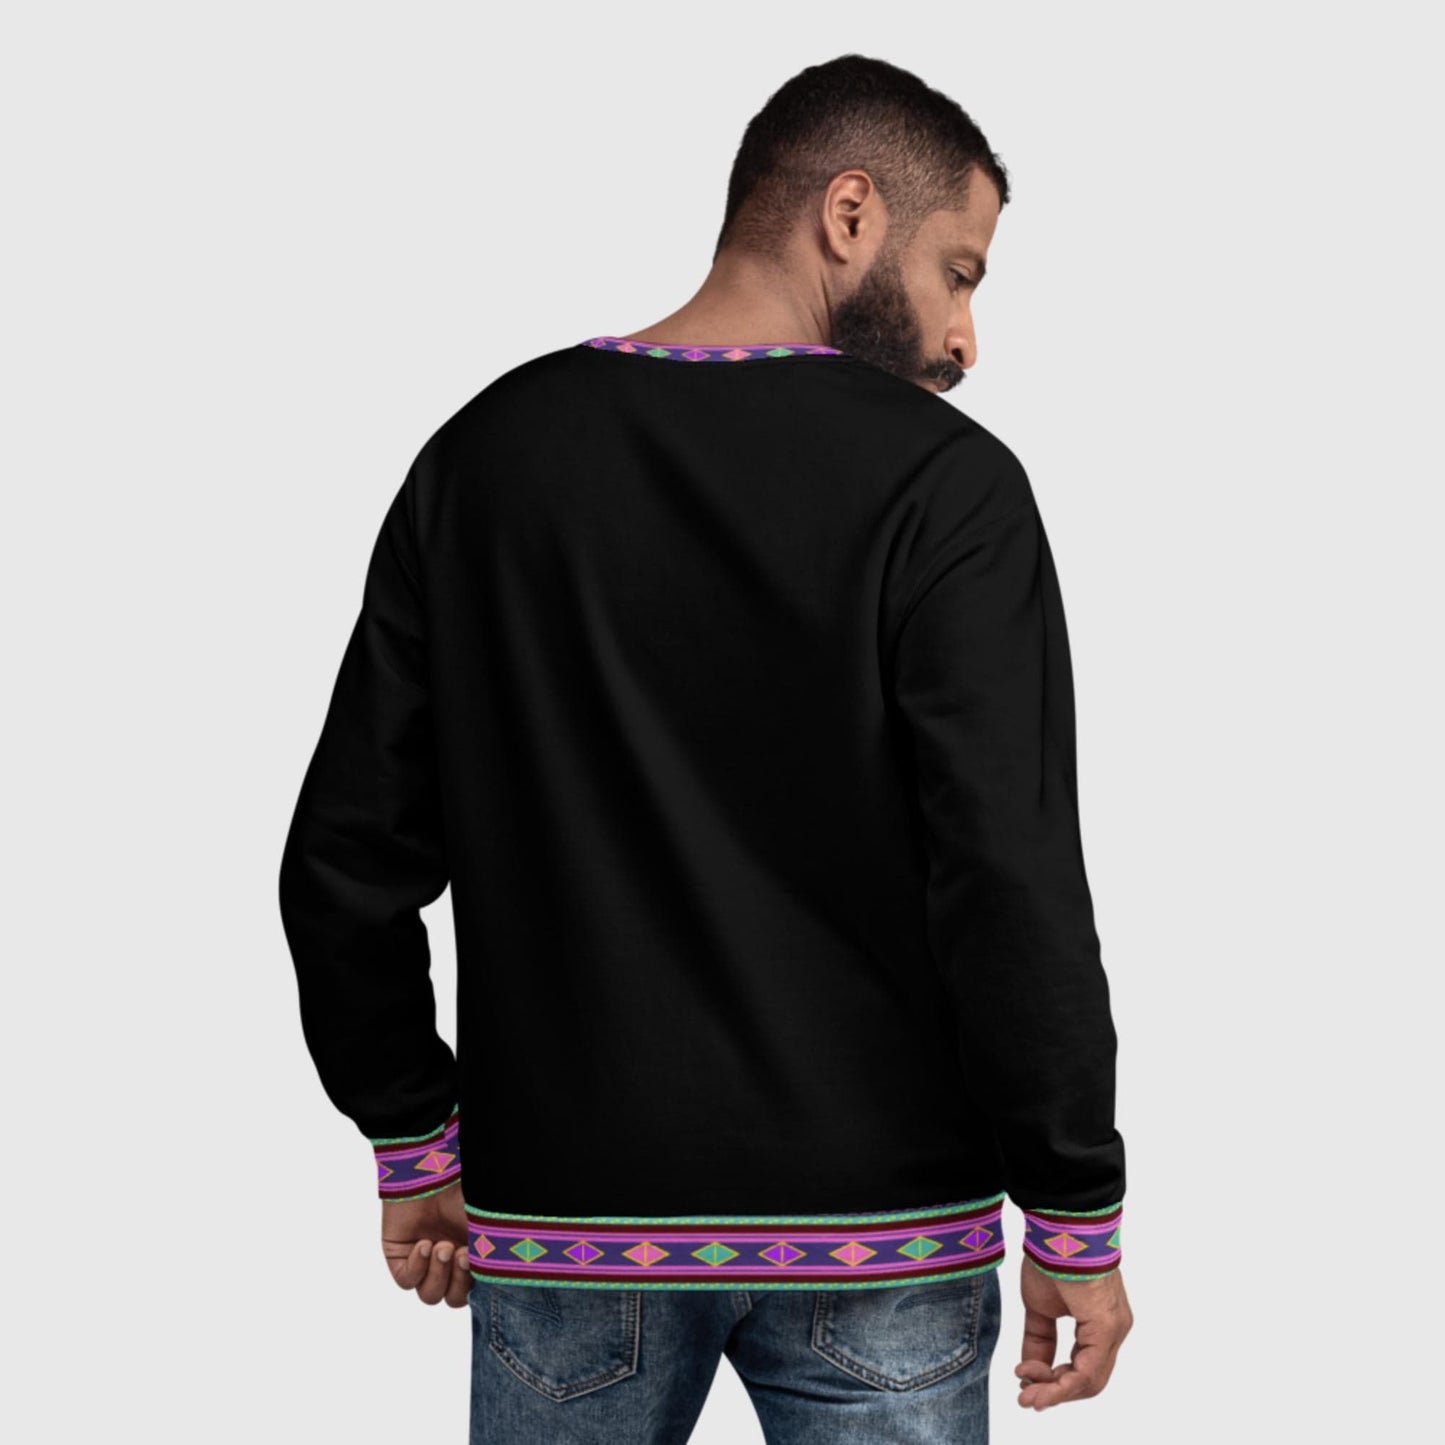 Habesha Style Modern Unisex Sweatshirt Black